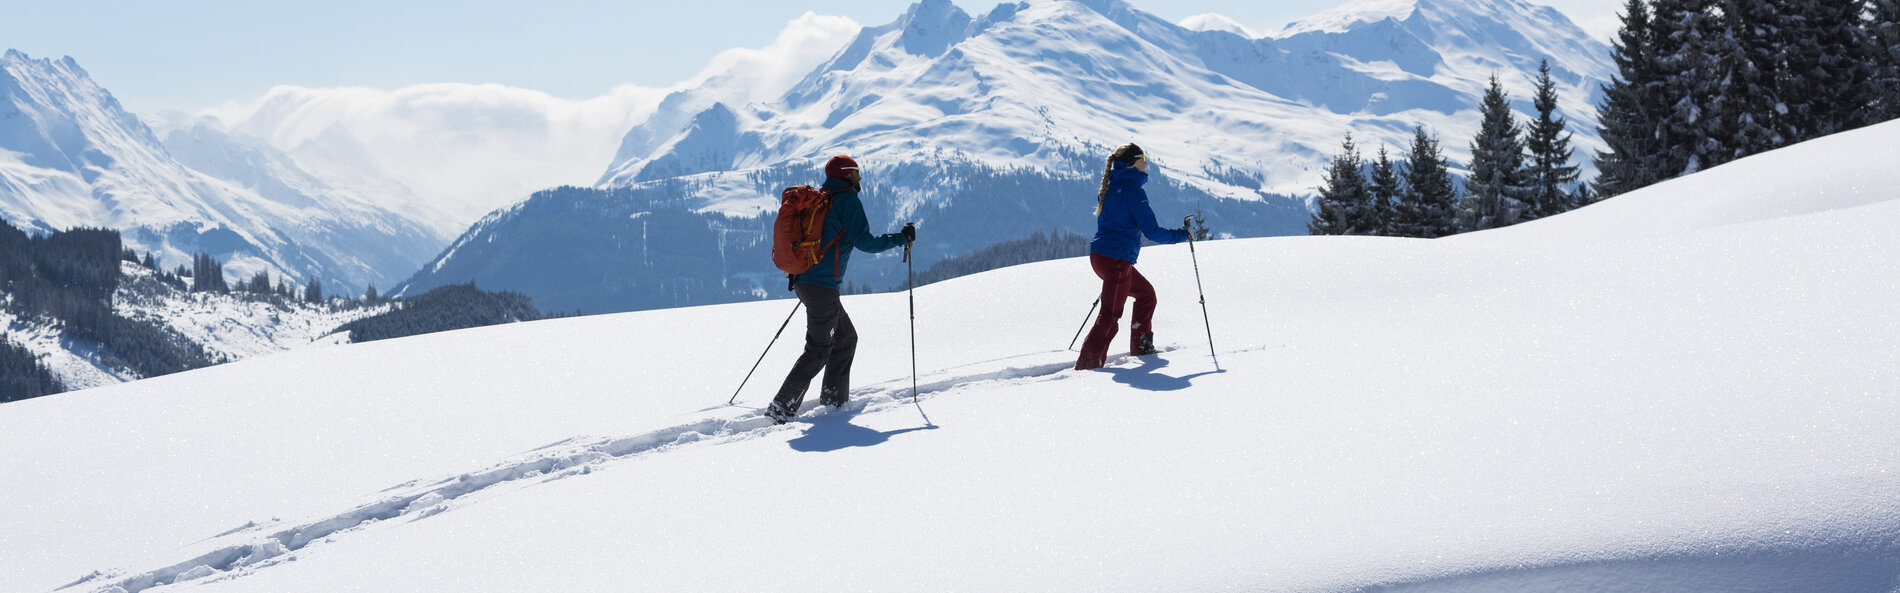 Eine Frau und ein Mann gehen hintereinander mit den Schneeschuhen einen verschneiten flachen Hang bergauf. Im Hintergrund sieht man tief verschneite Berge. Der Himmel ist blau und die Sonne scheint. 